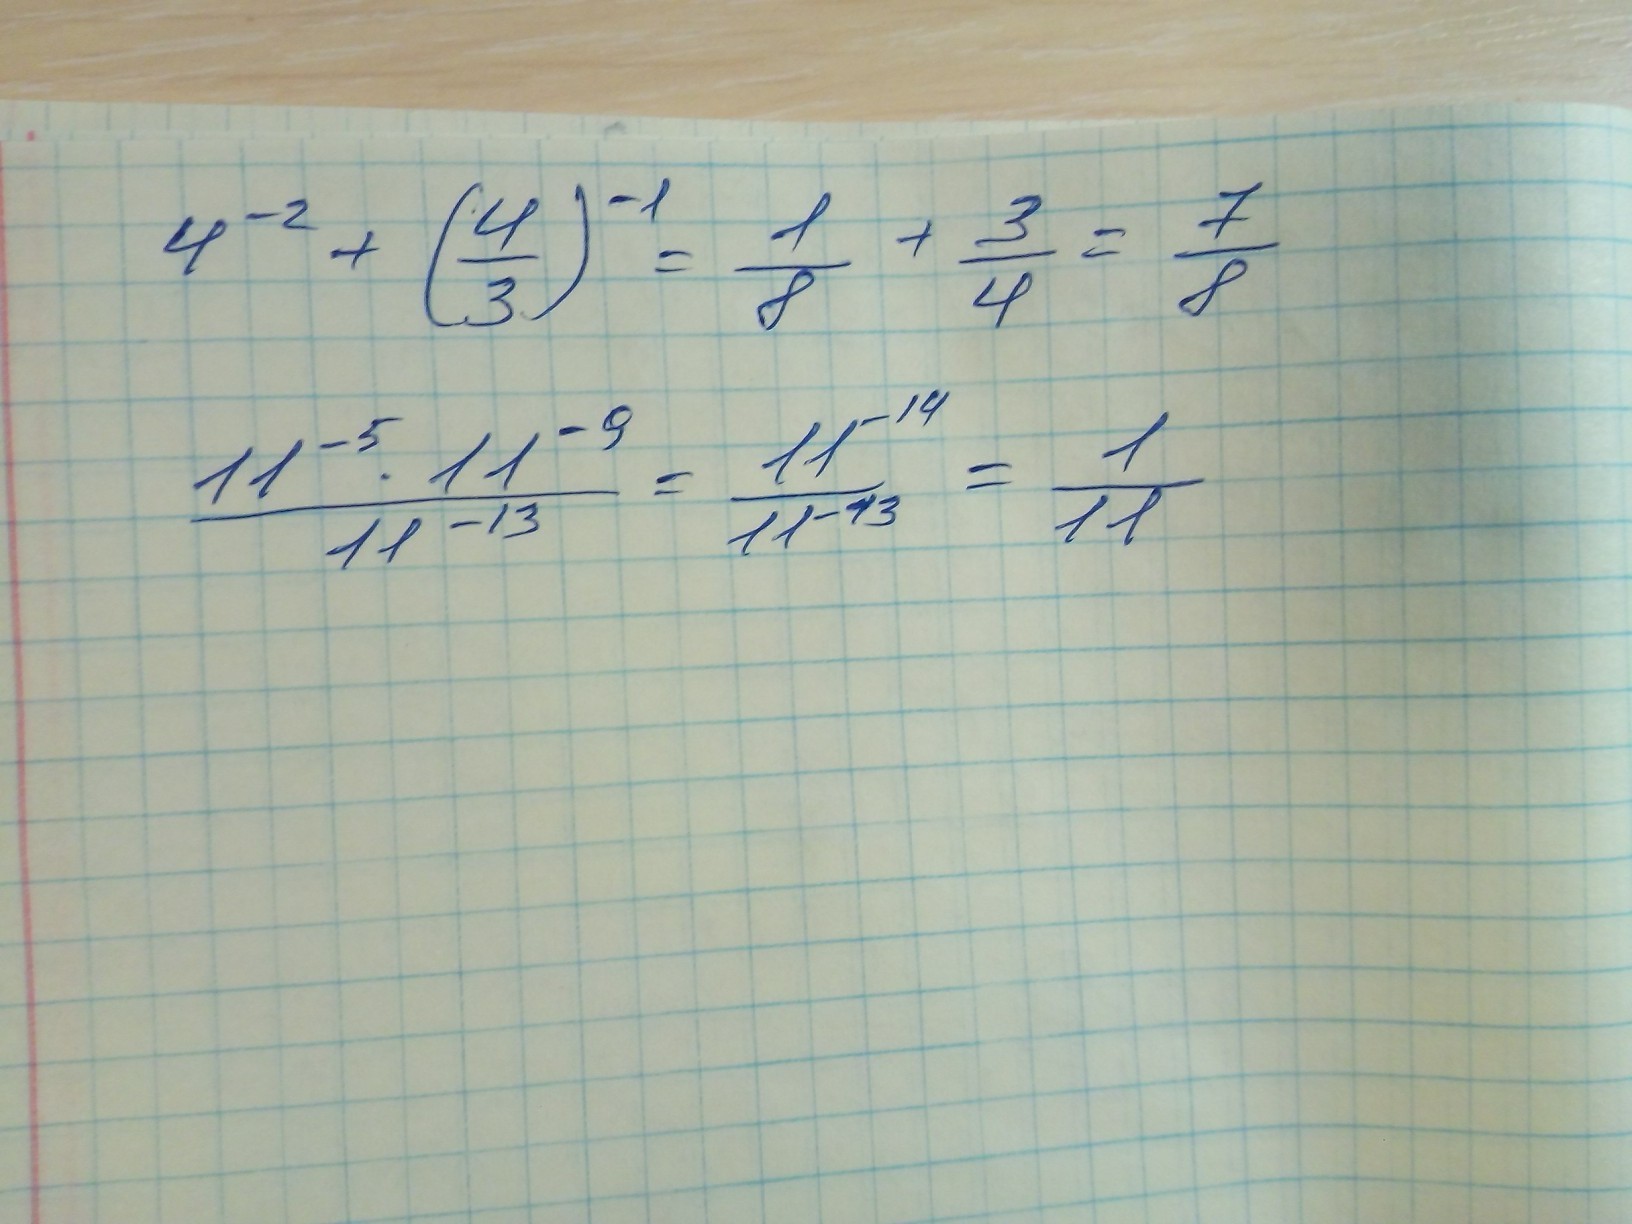 1 5 13 4 13 решение. Найдите значение выражения 4-2+(4/3)-1. Найти значение выражения 11/5+13/4. 1/4-(1/4)2+(1/4). 4^-2+(4/3)^-1.